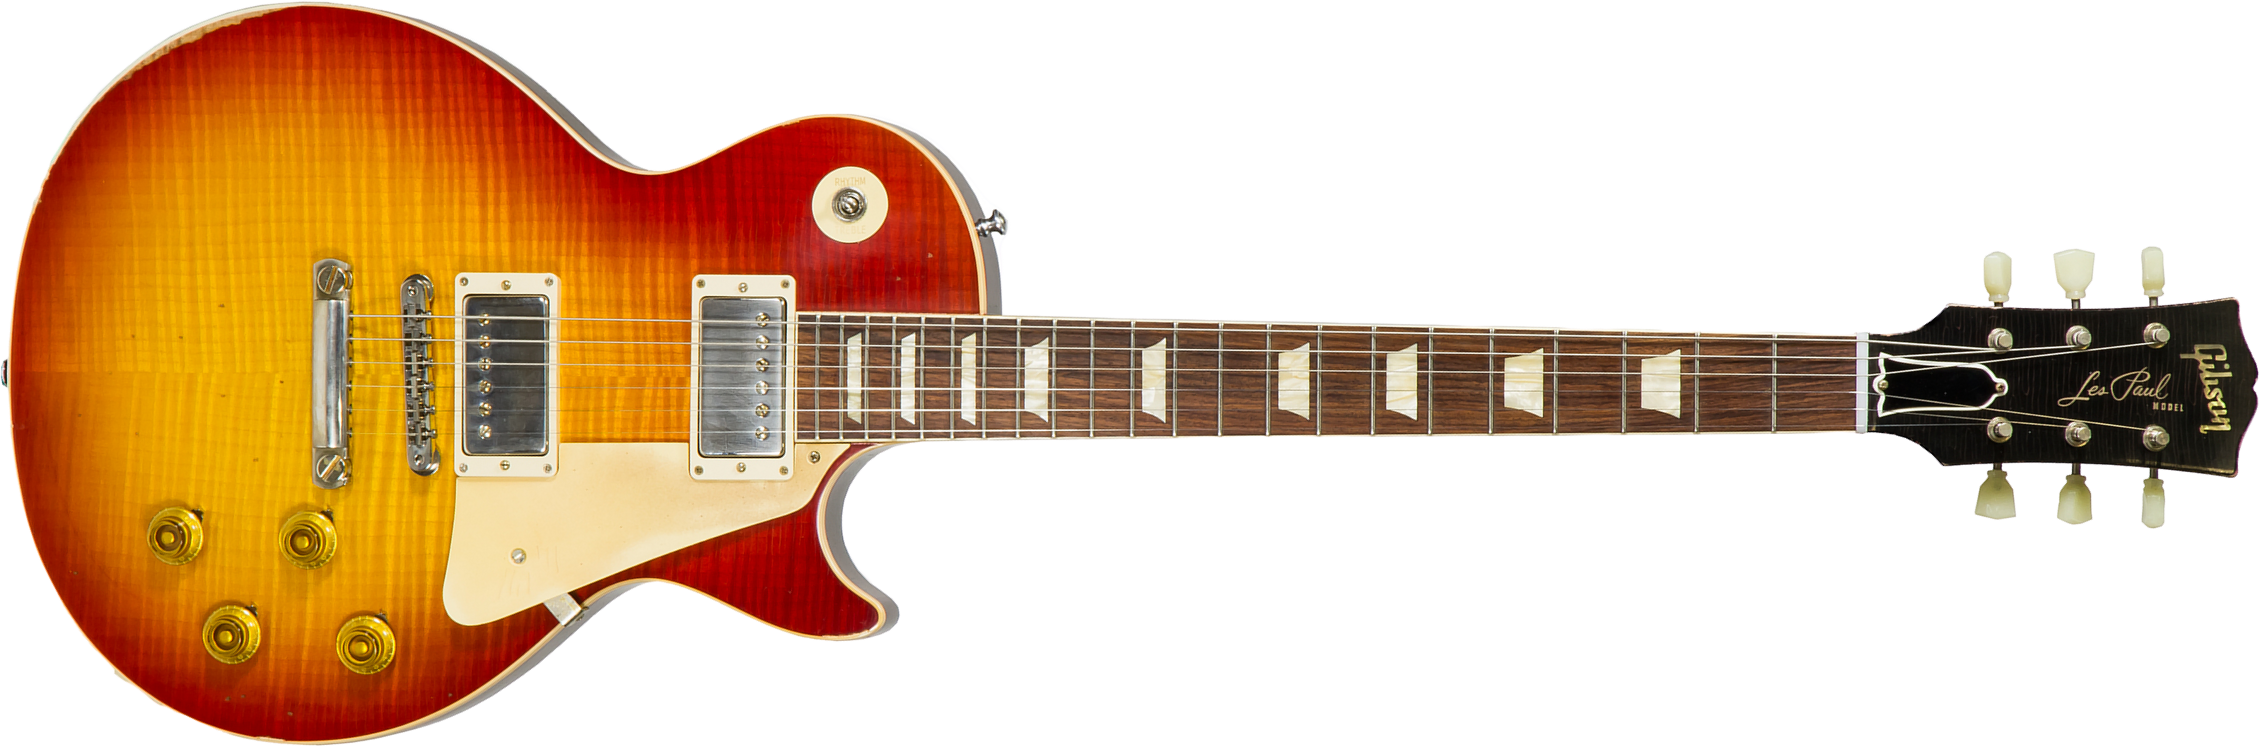 Gibson Custom Shop M2m Les Paul Standard 1958 Reissue 2019 2h Ht Rw #89849 - Heavy Aged First Burst - Guitarra eléctrica de corte único. - Main pictur